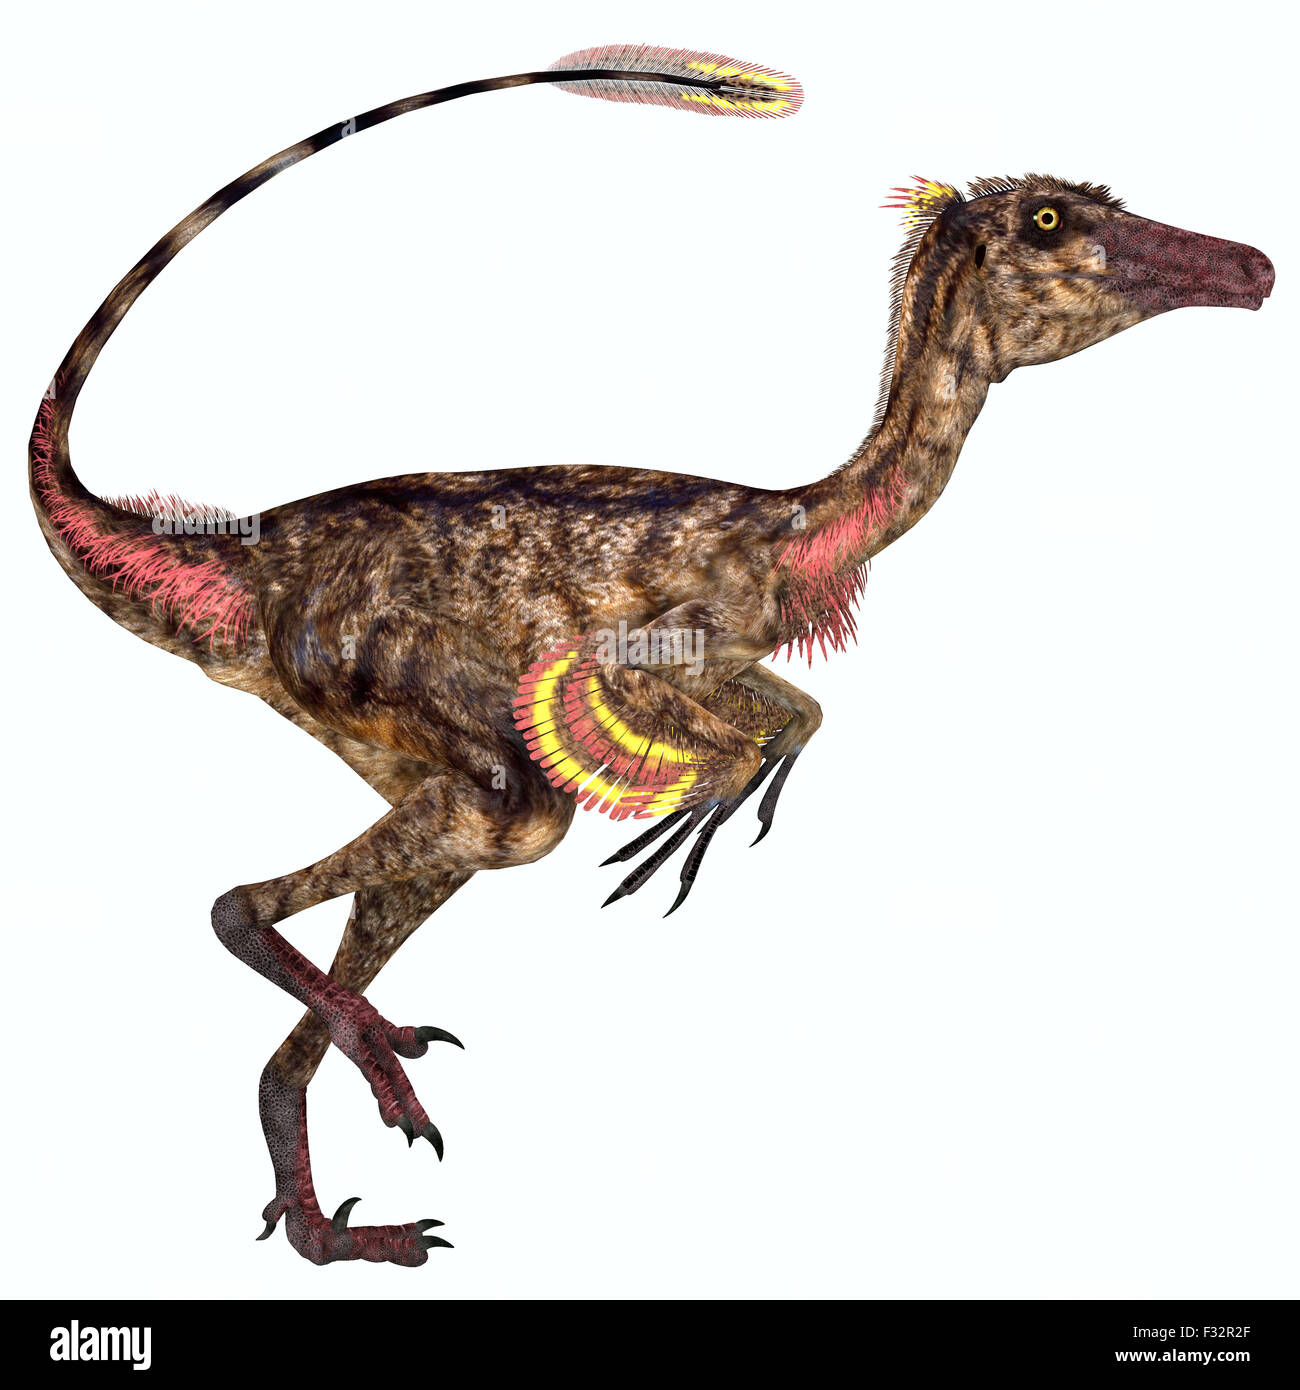 Troodon war ein fleischfressender kleiner Dinosaurier, der während der  Kreidezeit in Nordamerika lebte Stockfotografie - Alamy